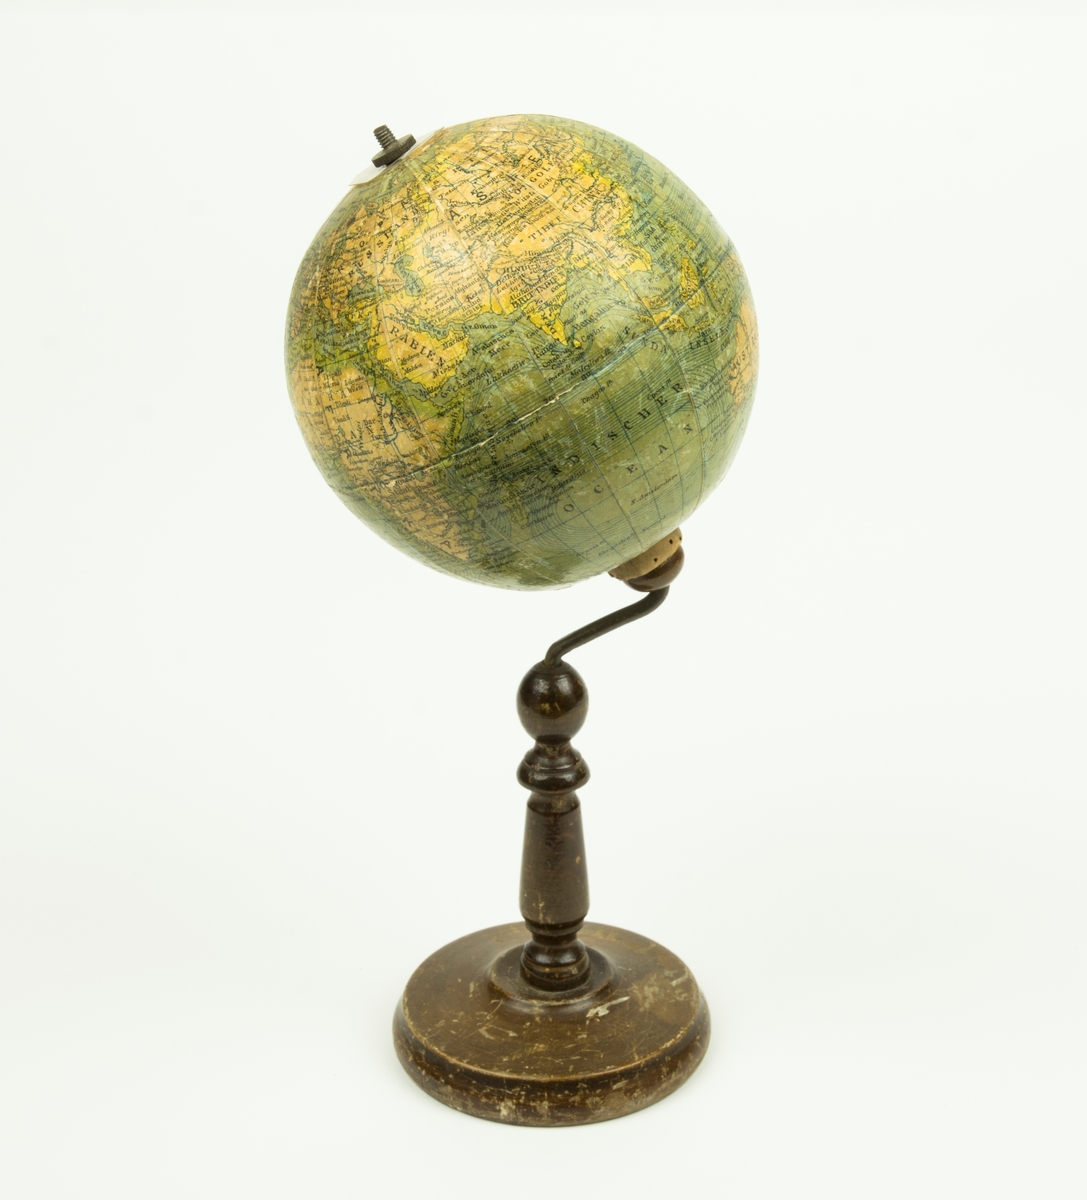 Jordgloben sitter på en brun träfot. Själva globen är gjord av papp. Rakt igenom globen går en metallaxel. På metallaxelns topp sitter en mutter.